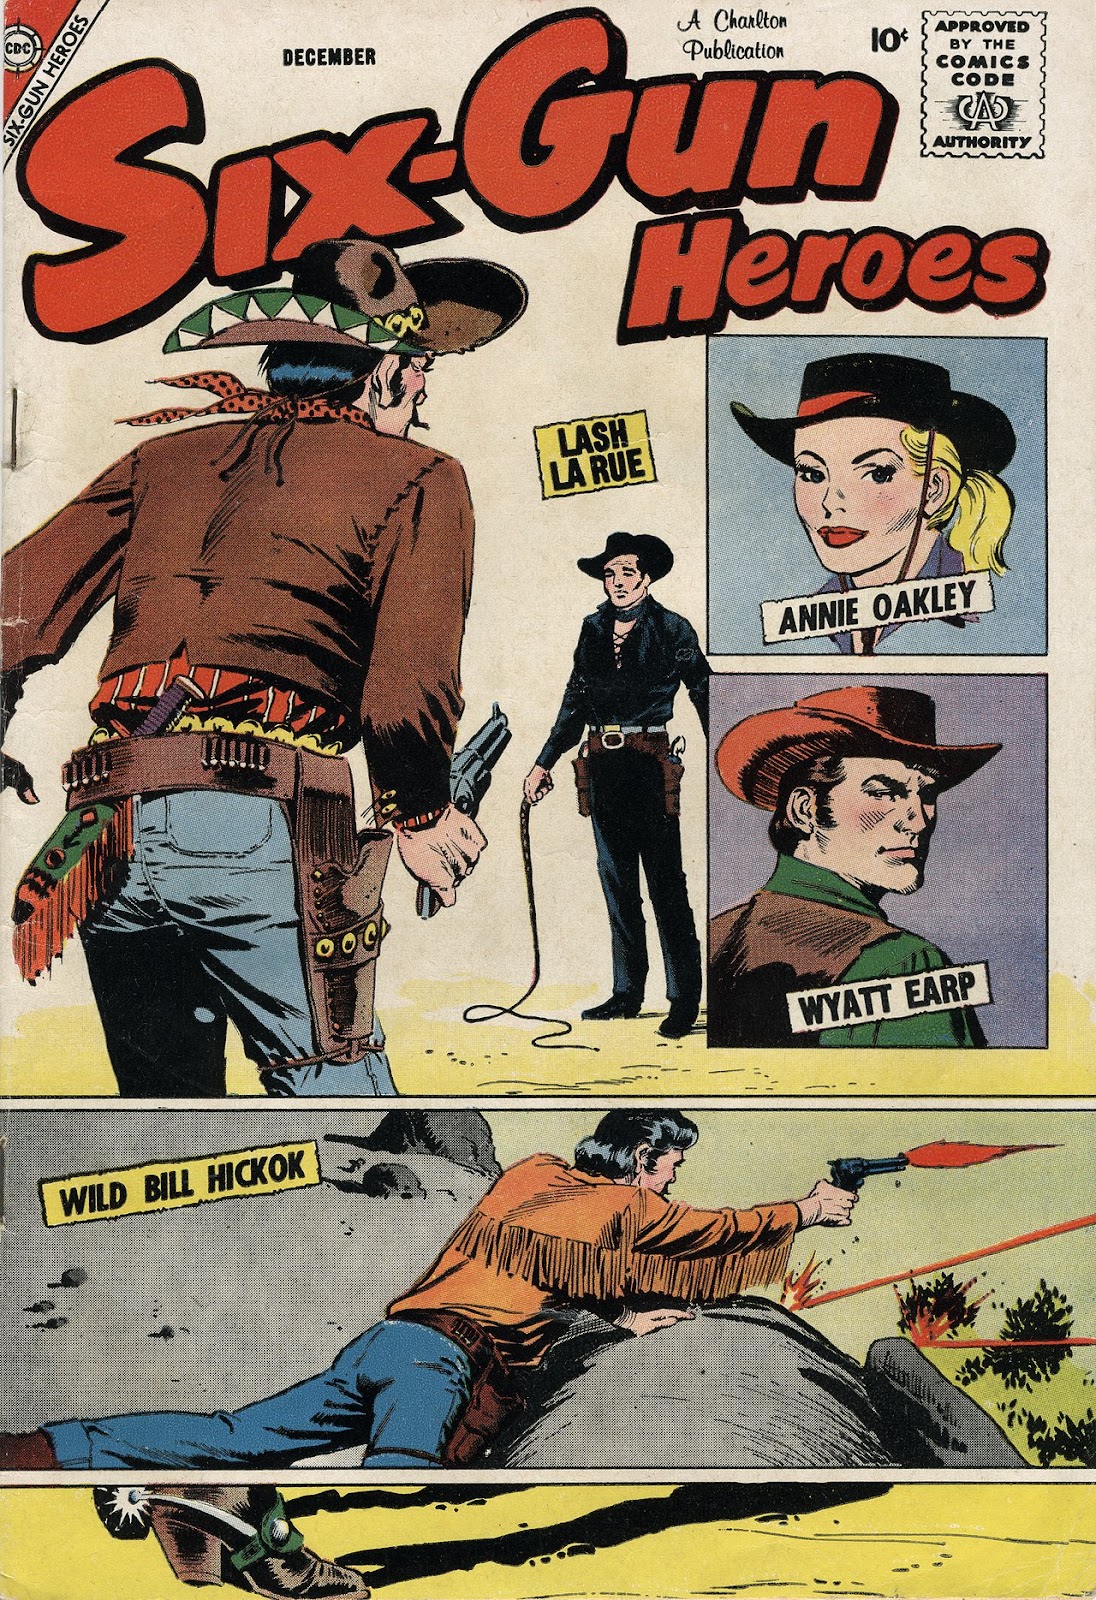 Six-Gun Heroes 49 Page 1